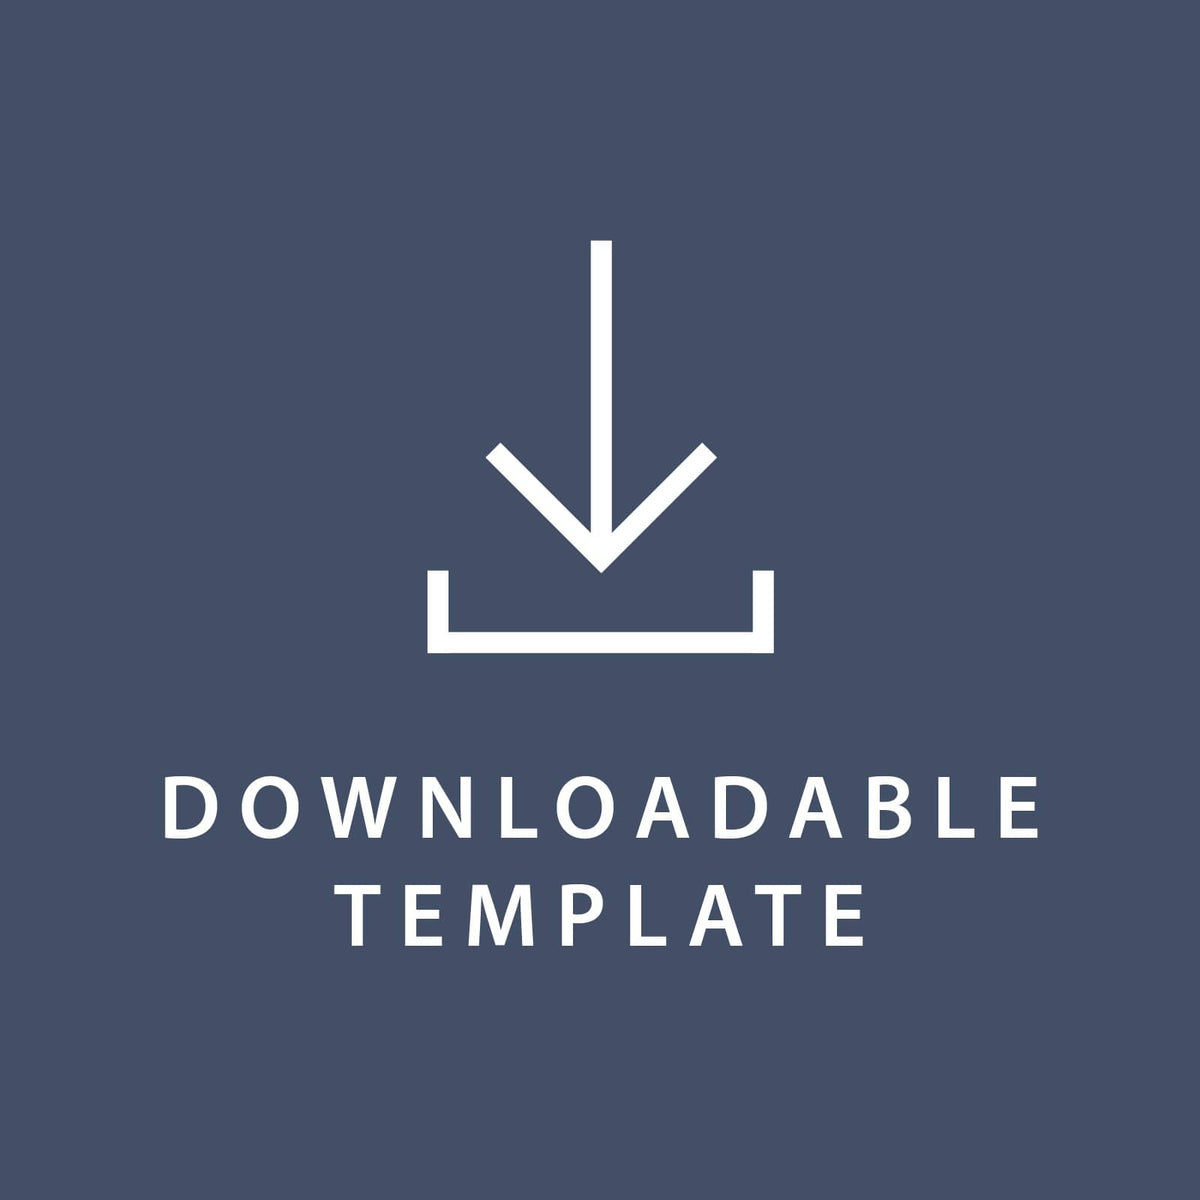 Template for 8.5 x 5.5 Invitations Gartner Studios Template tmplt0638